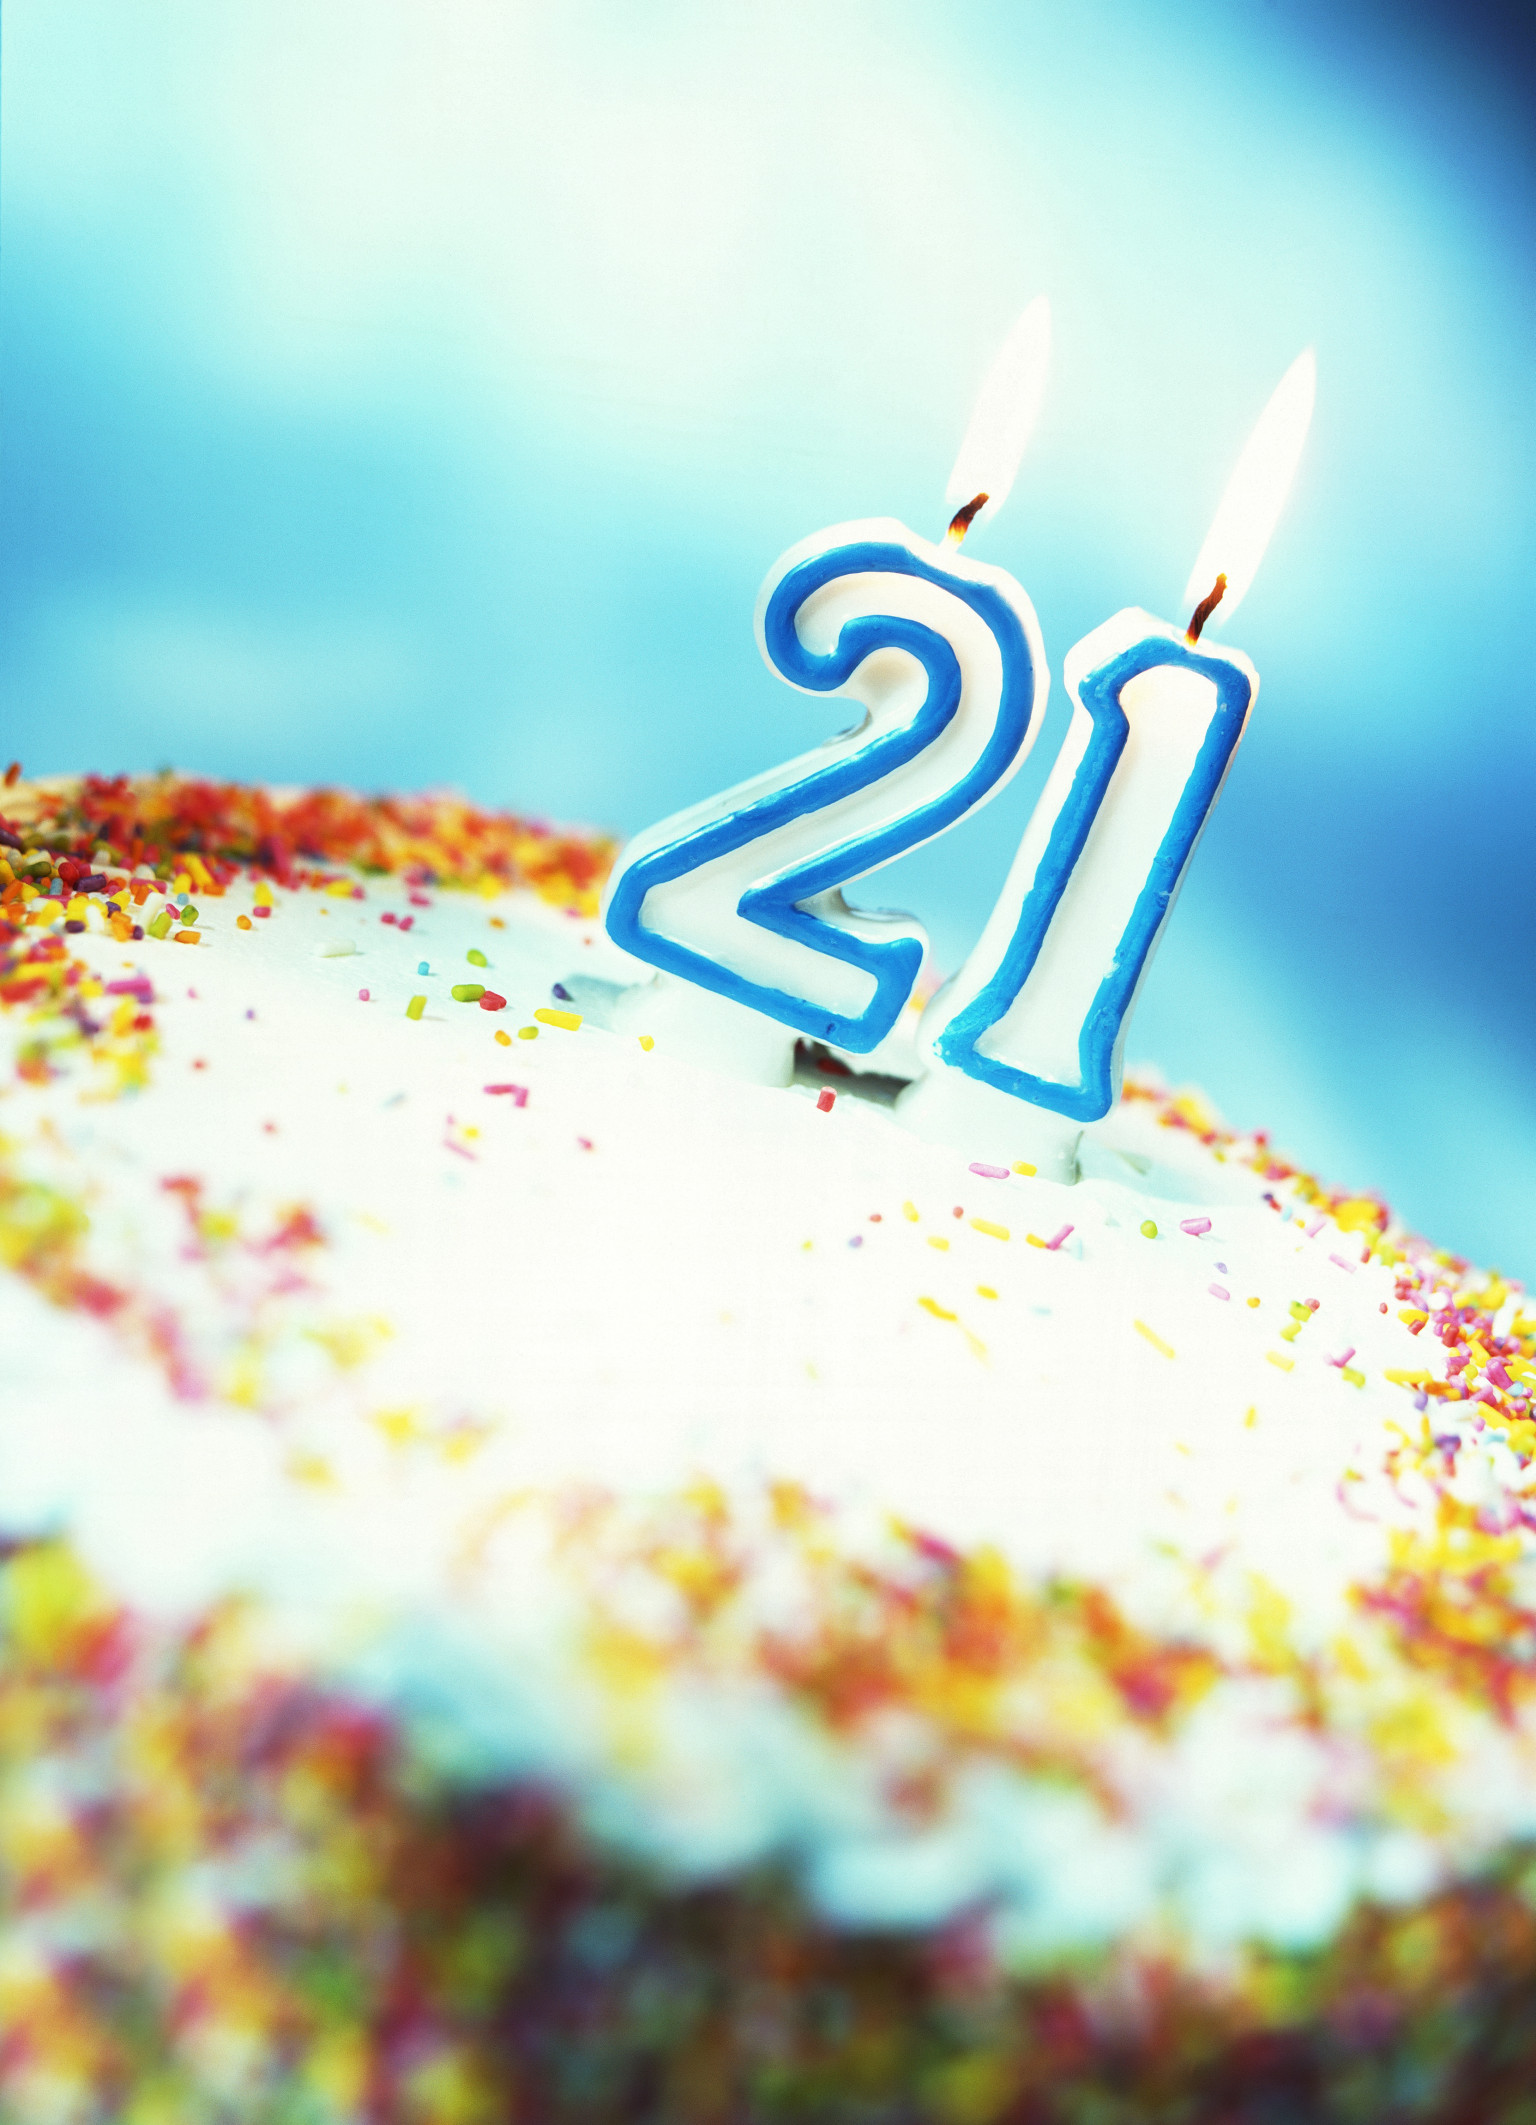 17 апреля 21 год. С днем рождения 21. Поздравление с днем рождения 21 год. Поздравления с днём рождения сына 21 год. Открытки с днём рождения 21 год.